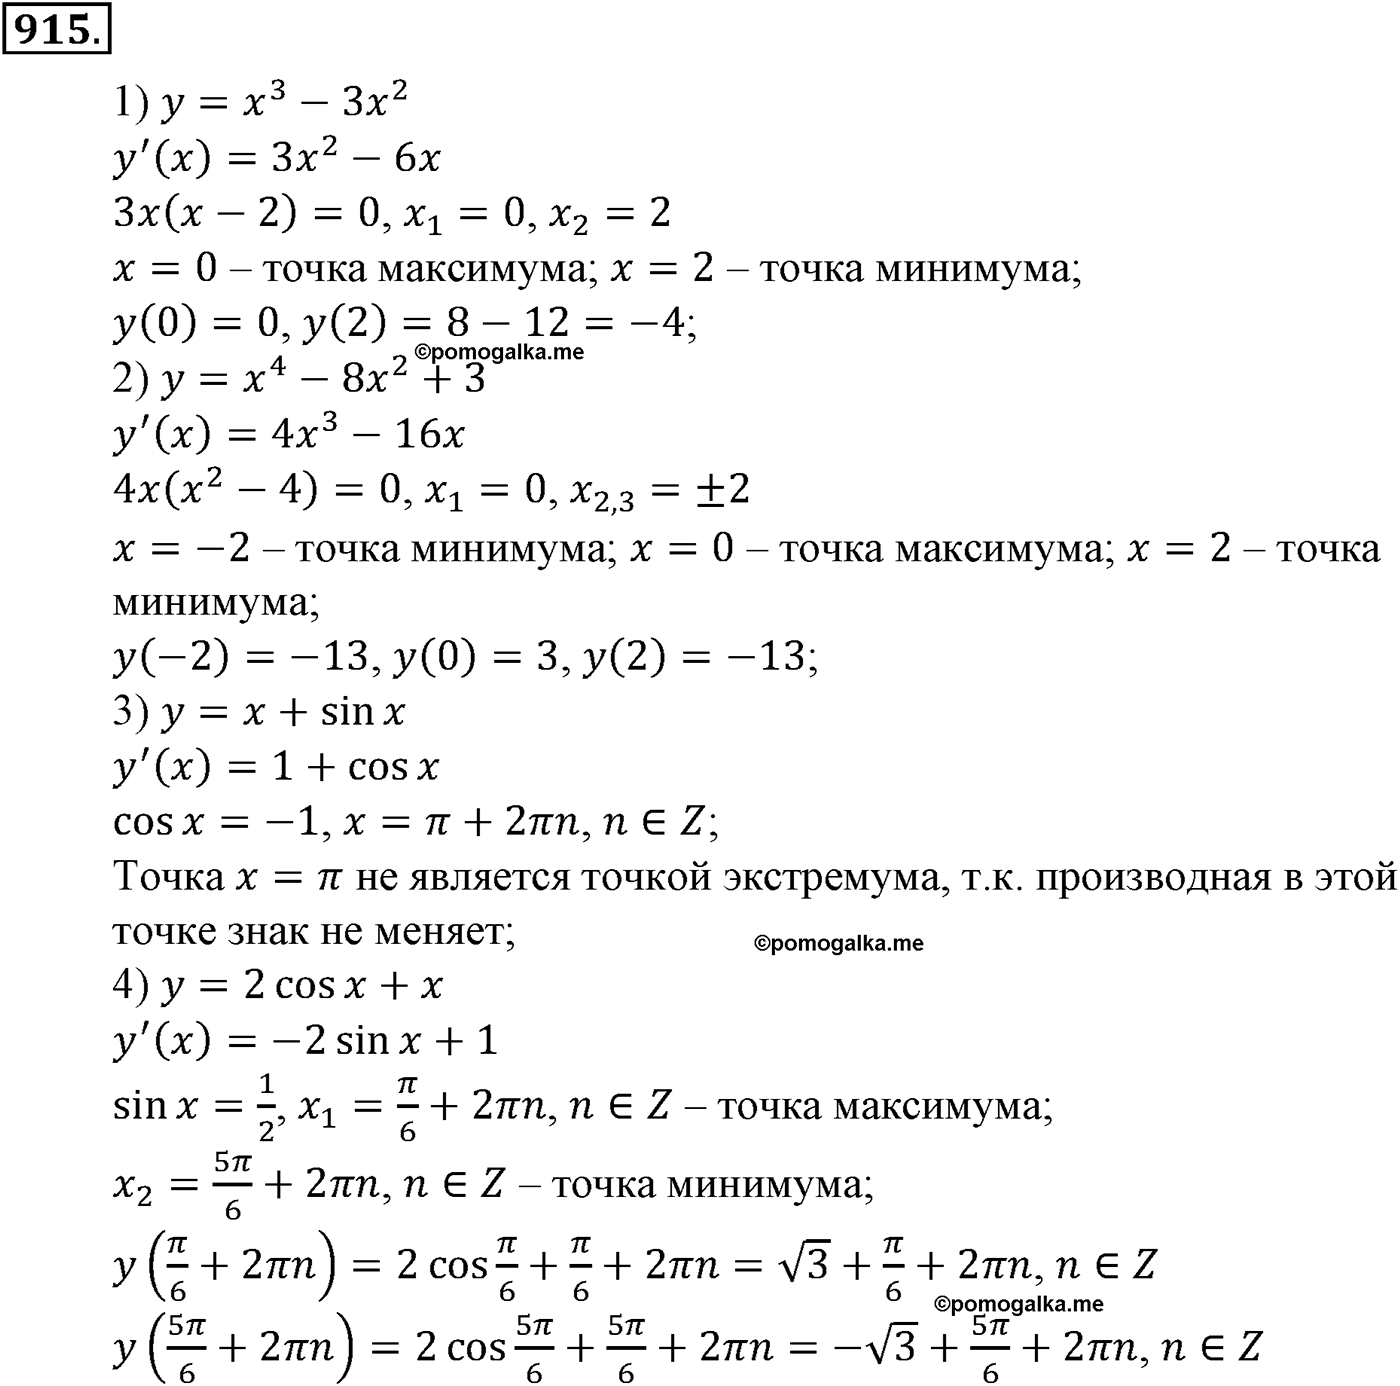 разбор задачи №915 по алгебре за 10-11 класс из учебника Алимова, Колягина